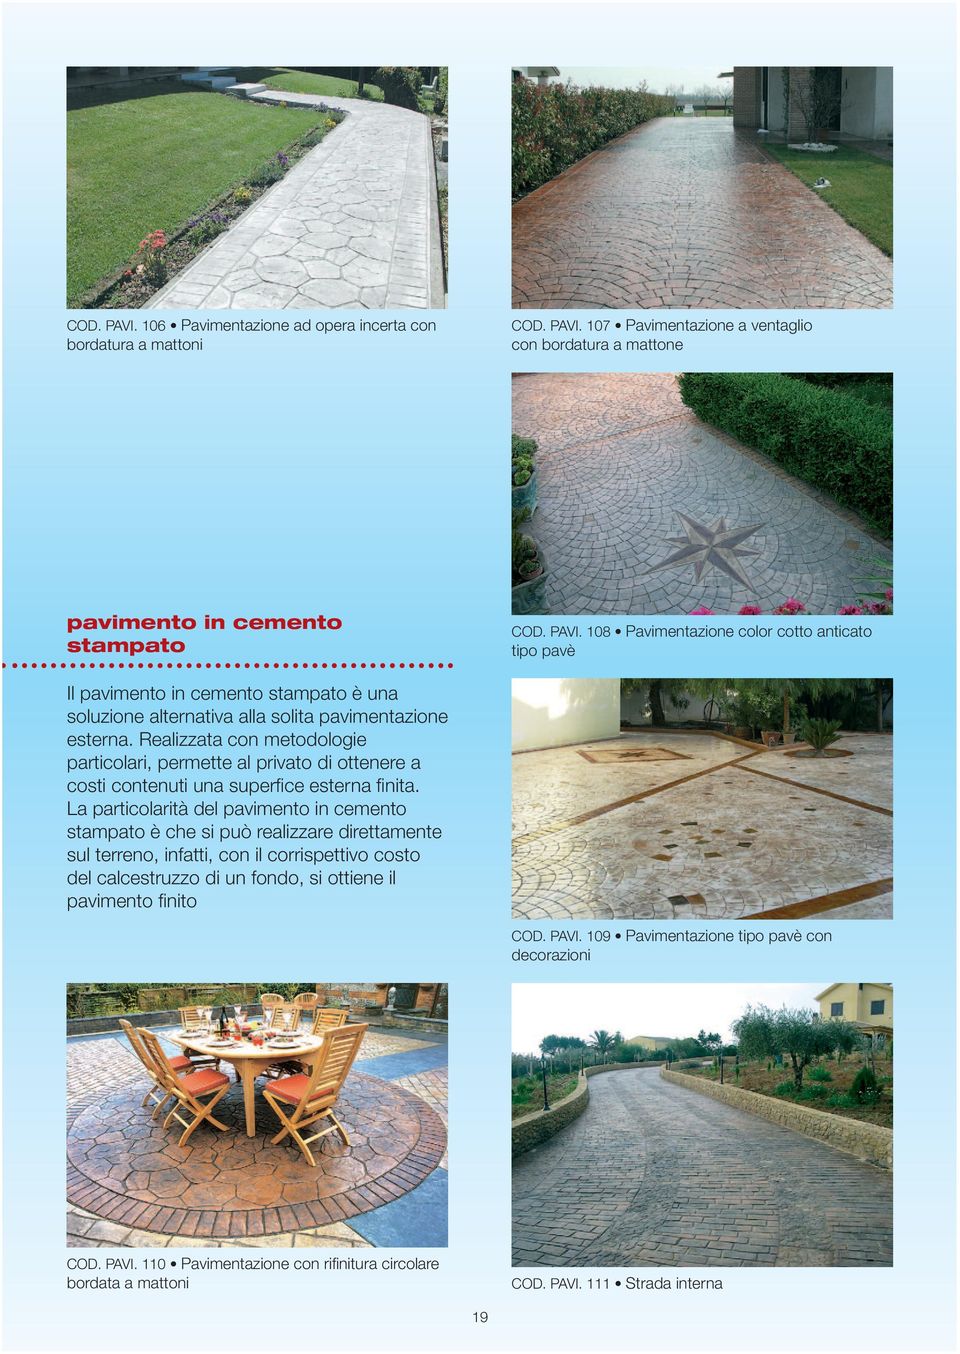 La particolarità del pavimento in cemento stampato è che si può realizzare direttamente sul terreno, infatti, con il corrispettivo costo del calcestruzzo di un fondo, si ottiene il pavimento finito